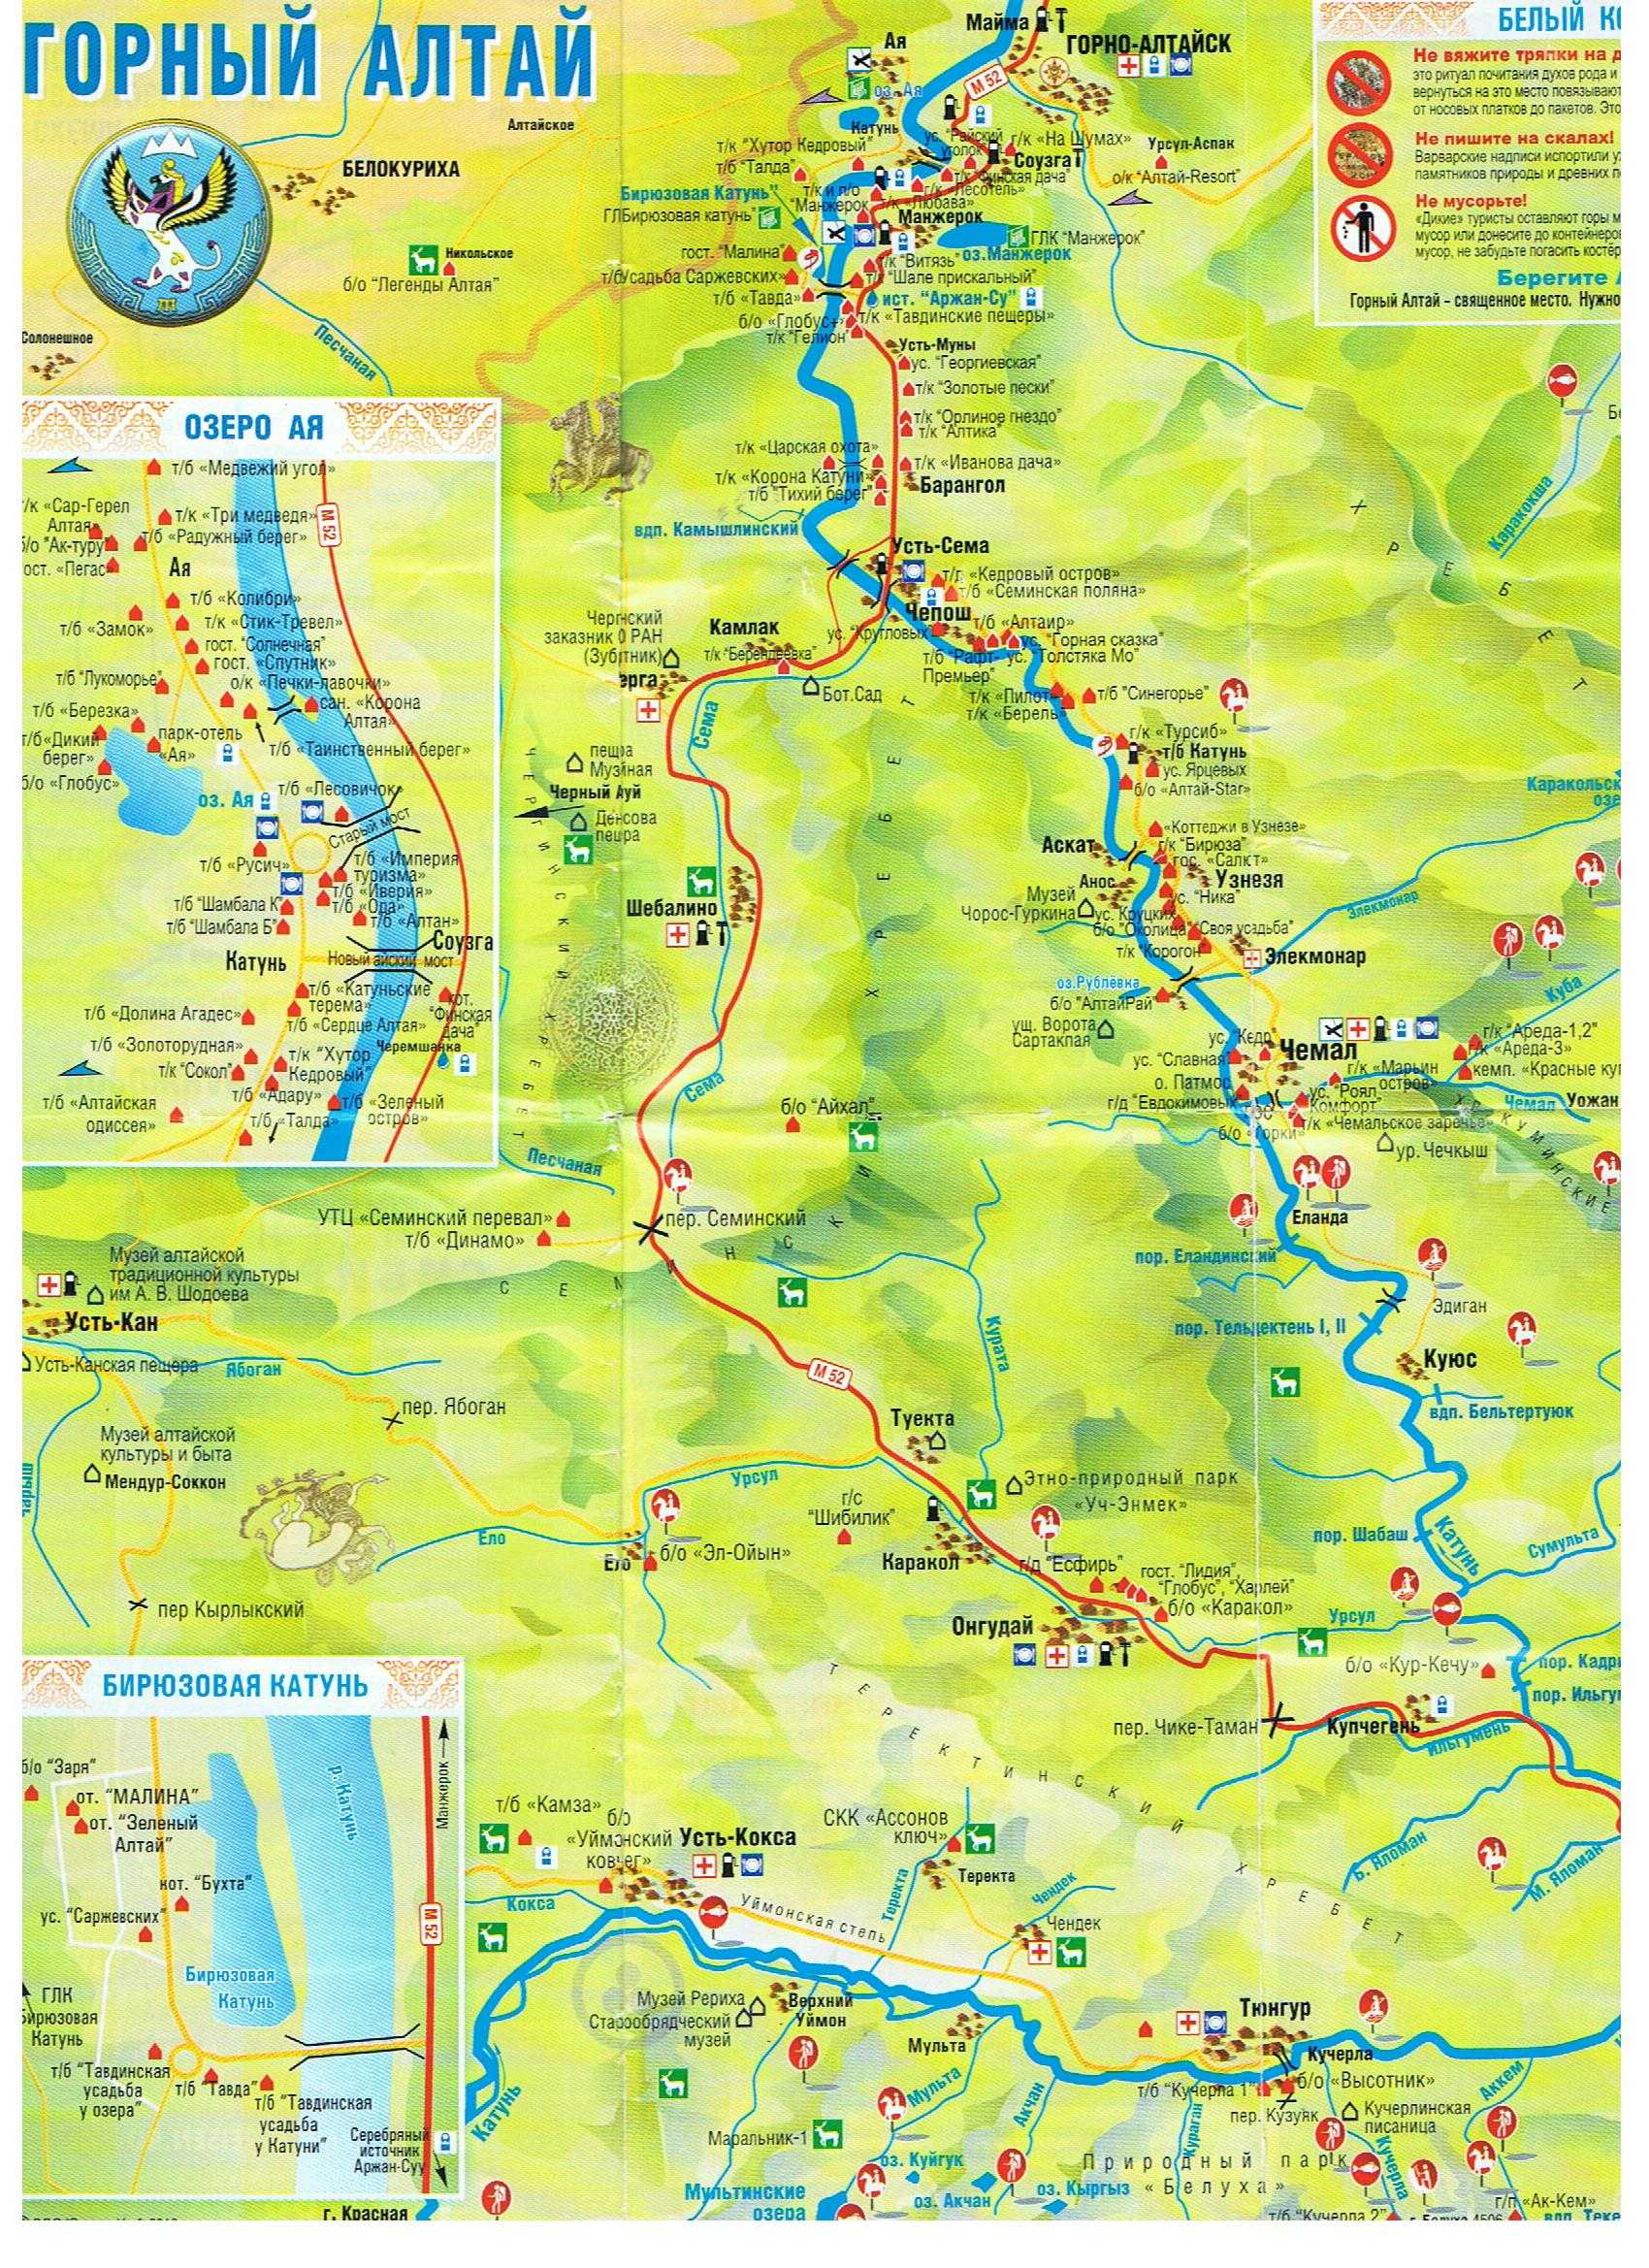 Алтайск манжерок расстояние. Туристическая карта горного Алтая. Карта горного Алтая с достопримечательностями. Карта горного Алтая с турбазами и достопримечательности. Карта горного Алтая с базами.